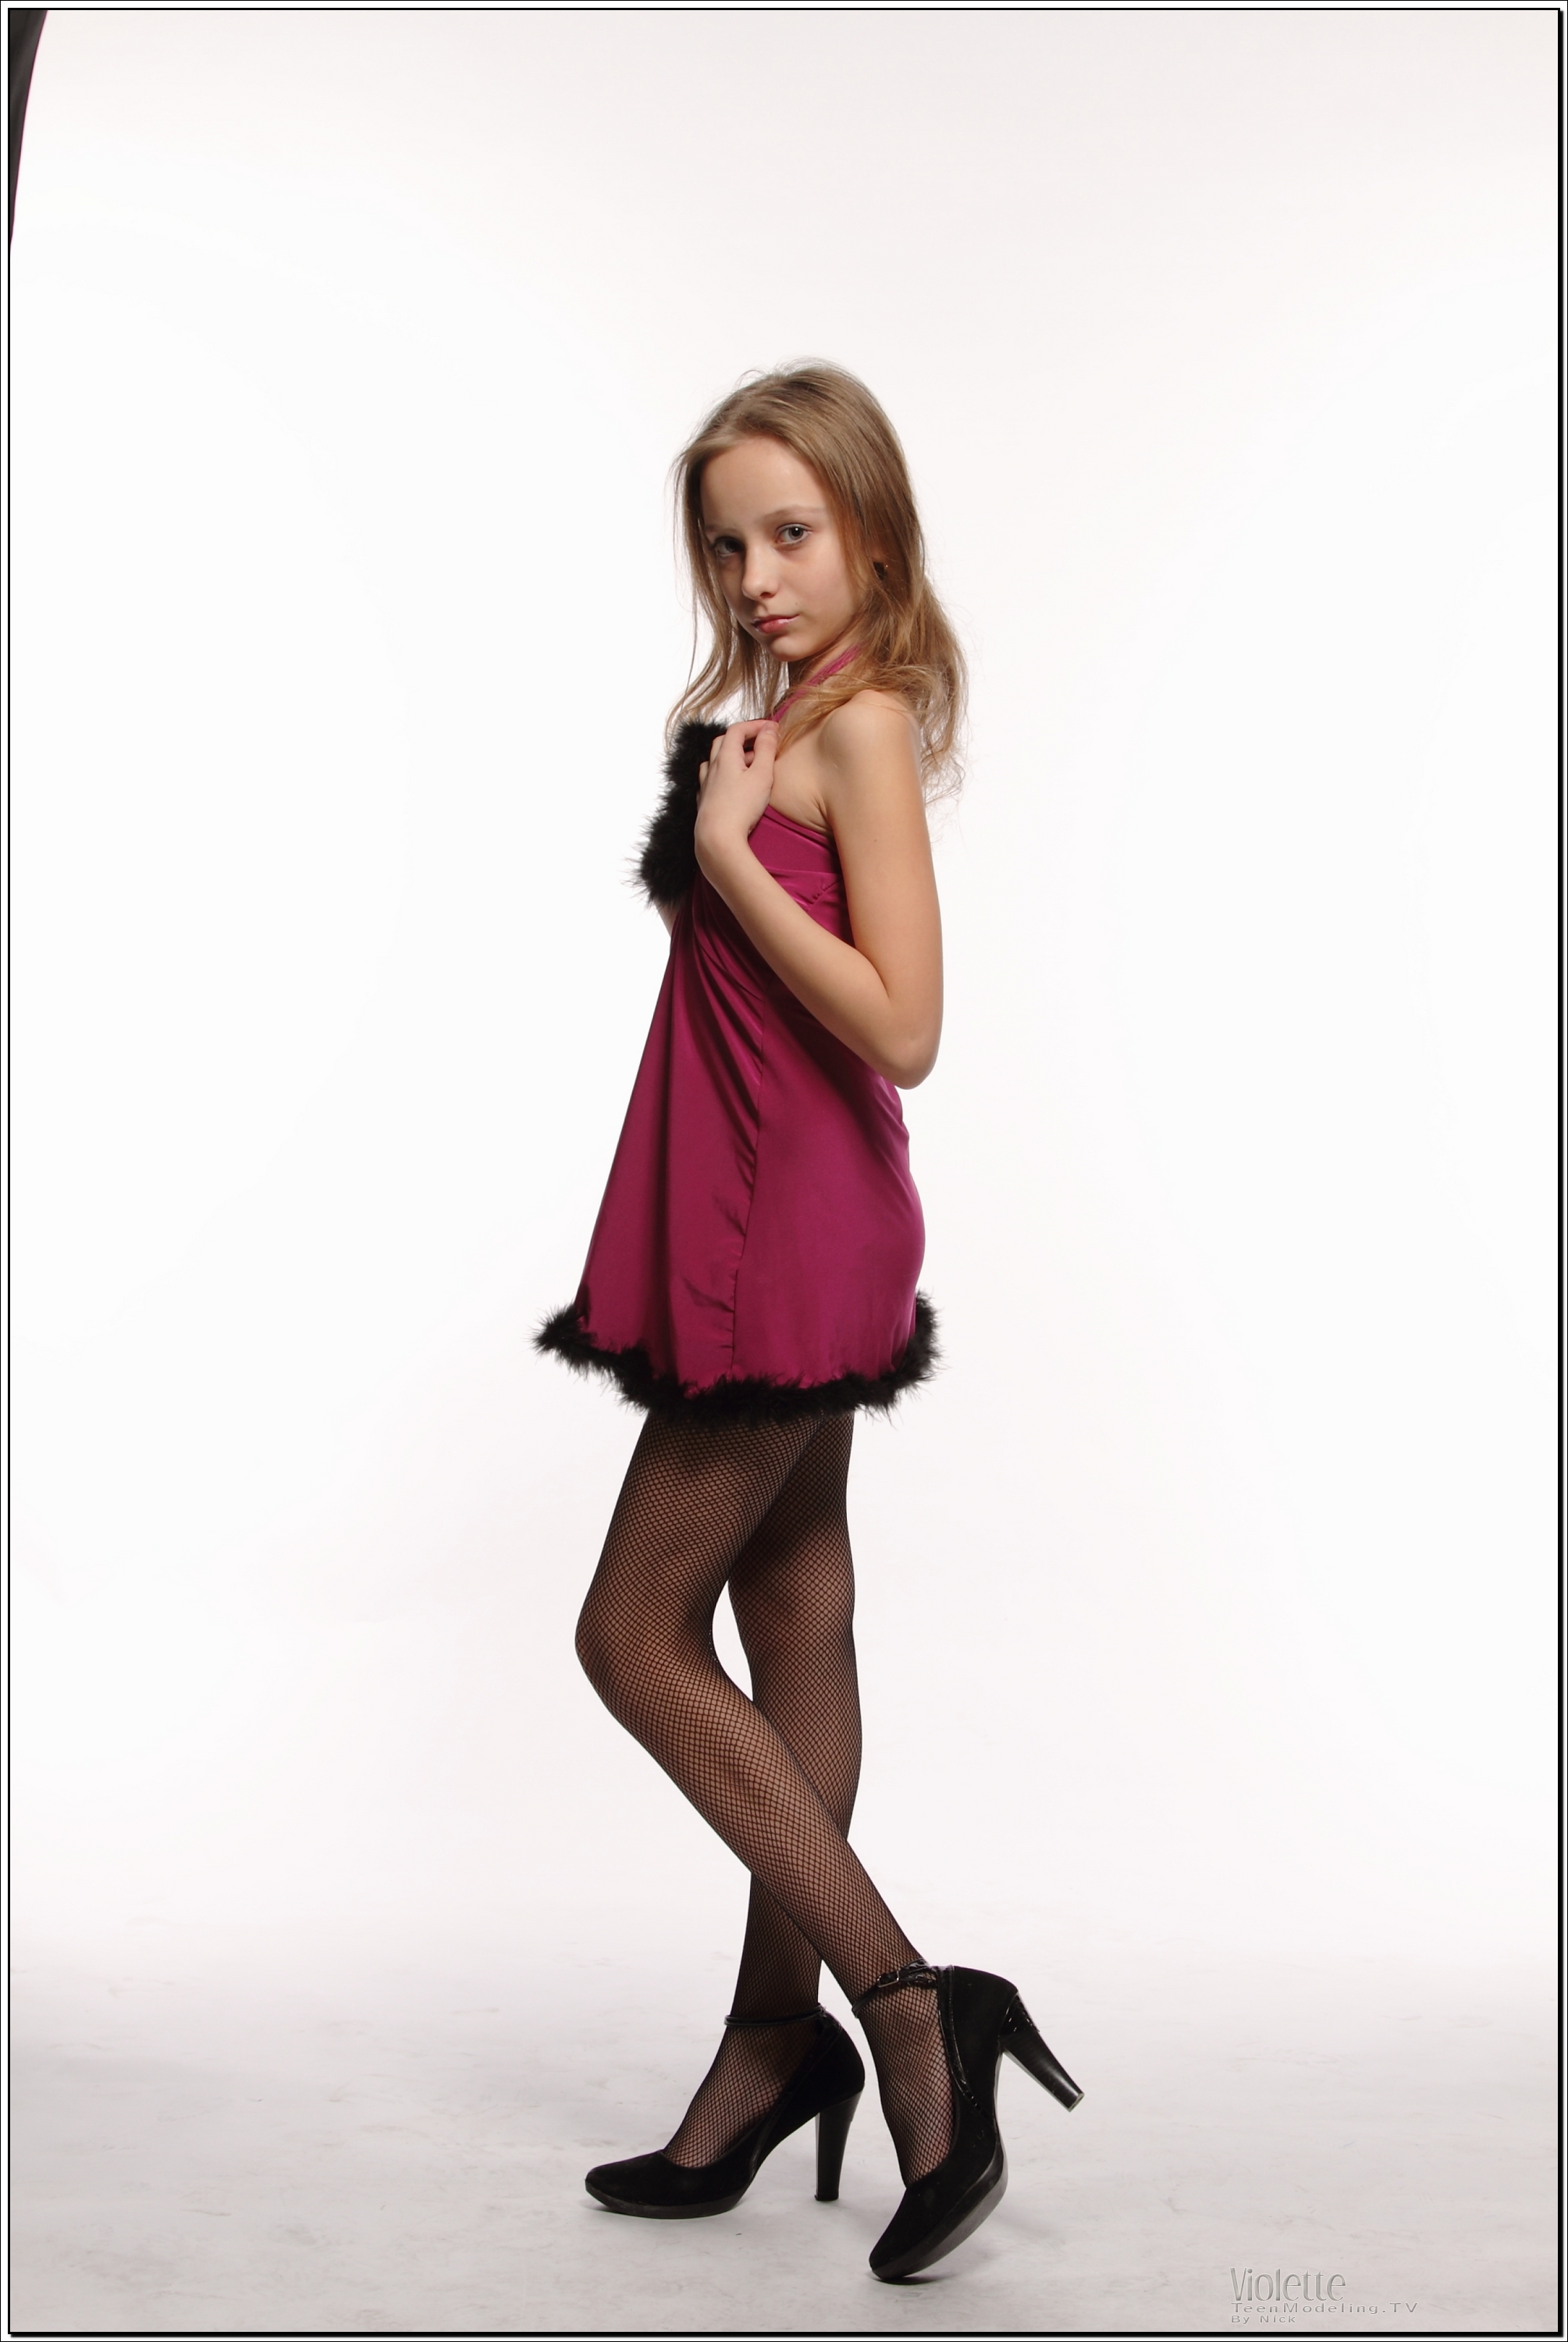 violette_model_pinkhalter_teenmodeling_tv_003.jpg